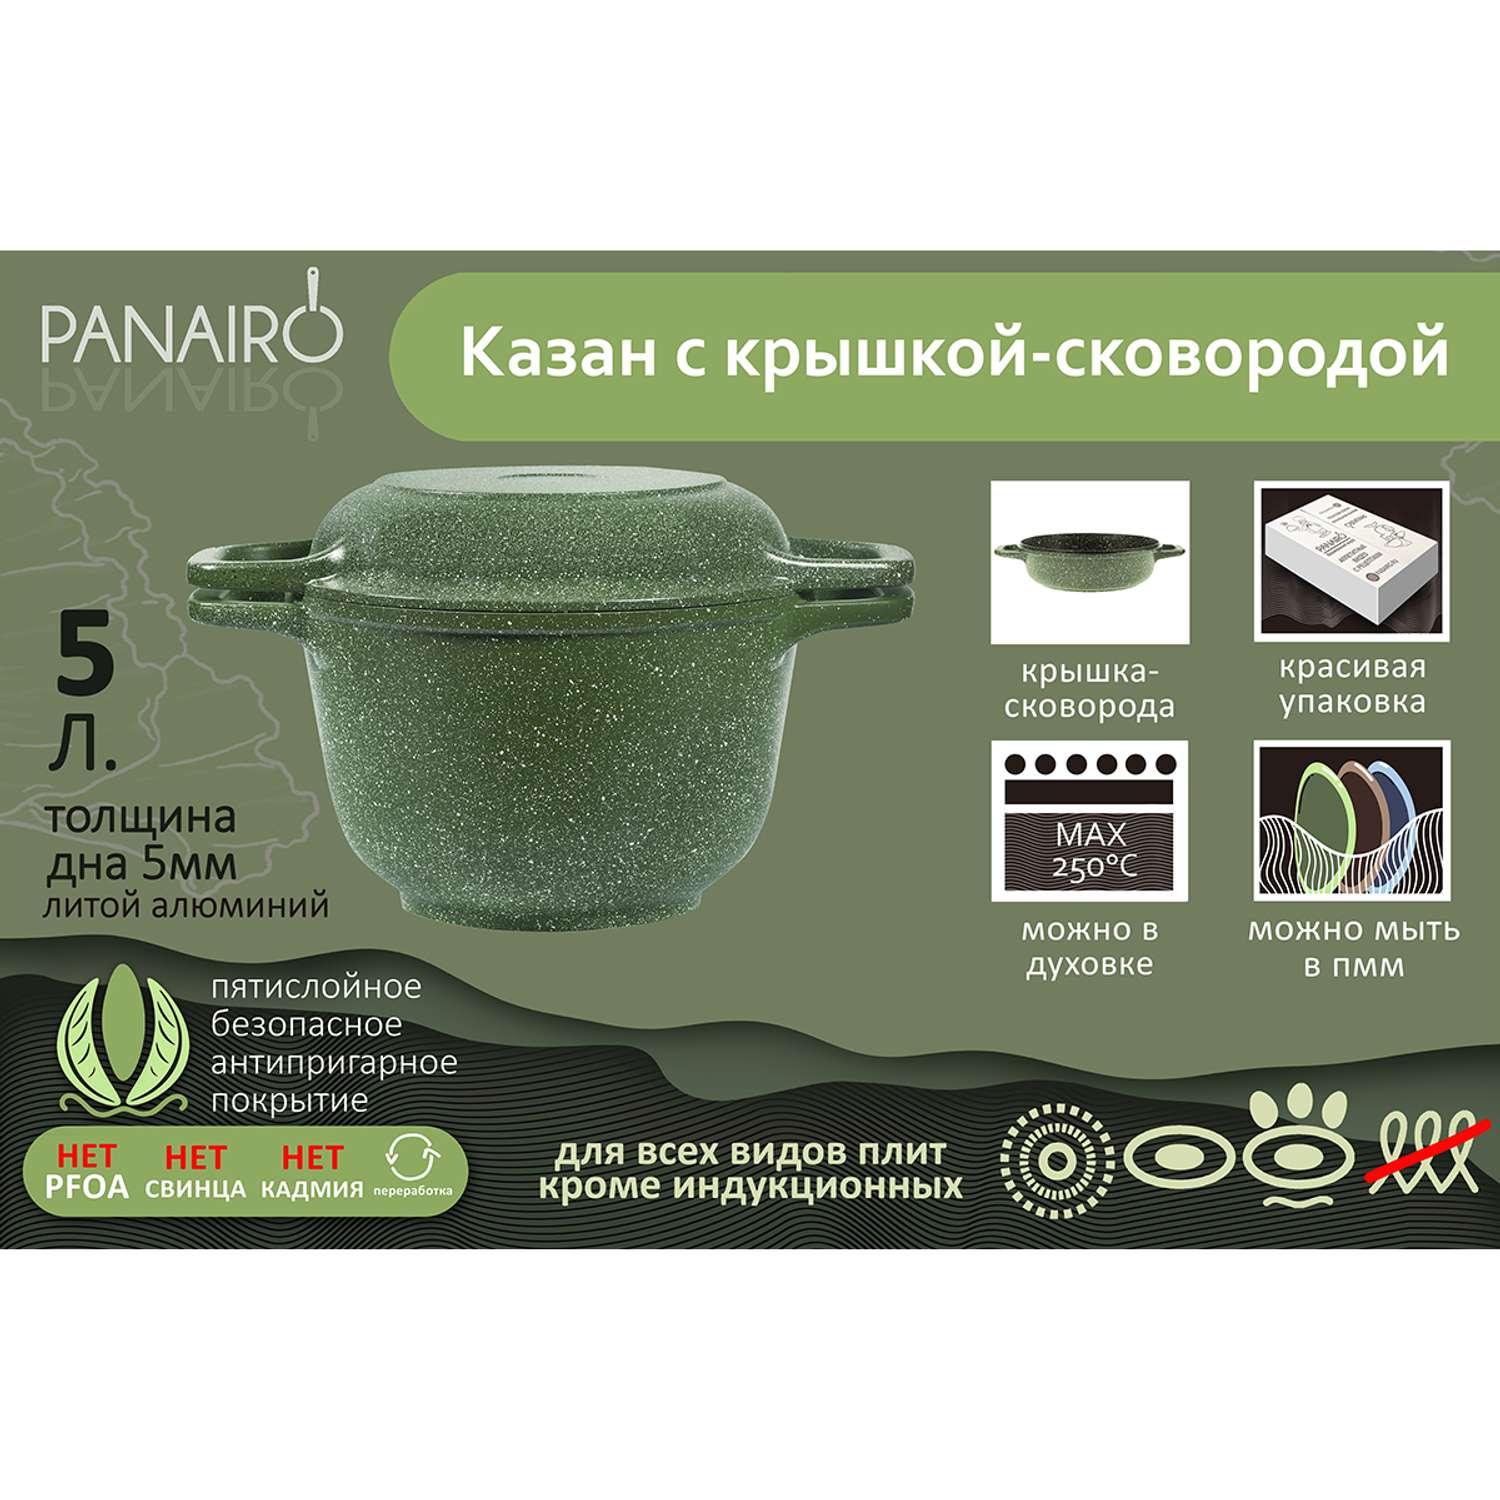 Казан Panairo с антипригарным покрытием алюминиевый 5 литров с крышкой-сковородой для плиты - фото 2